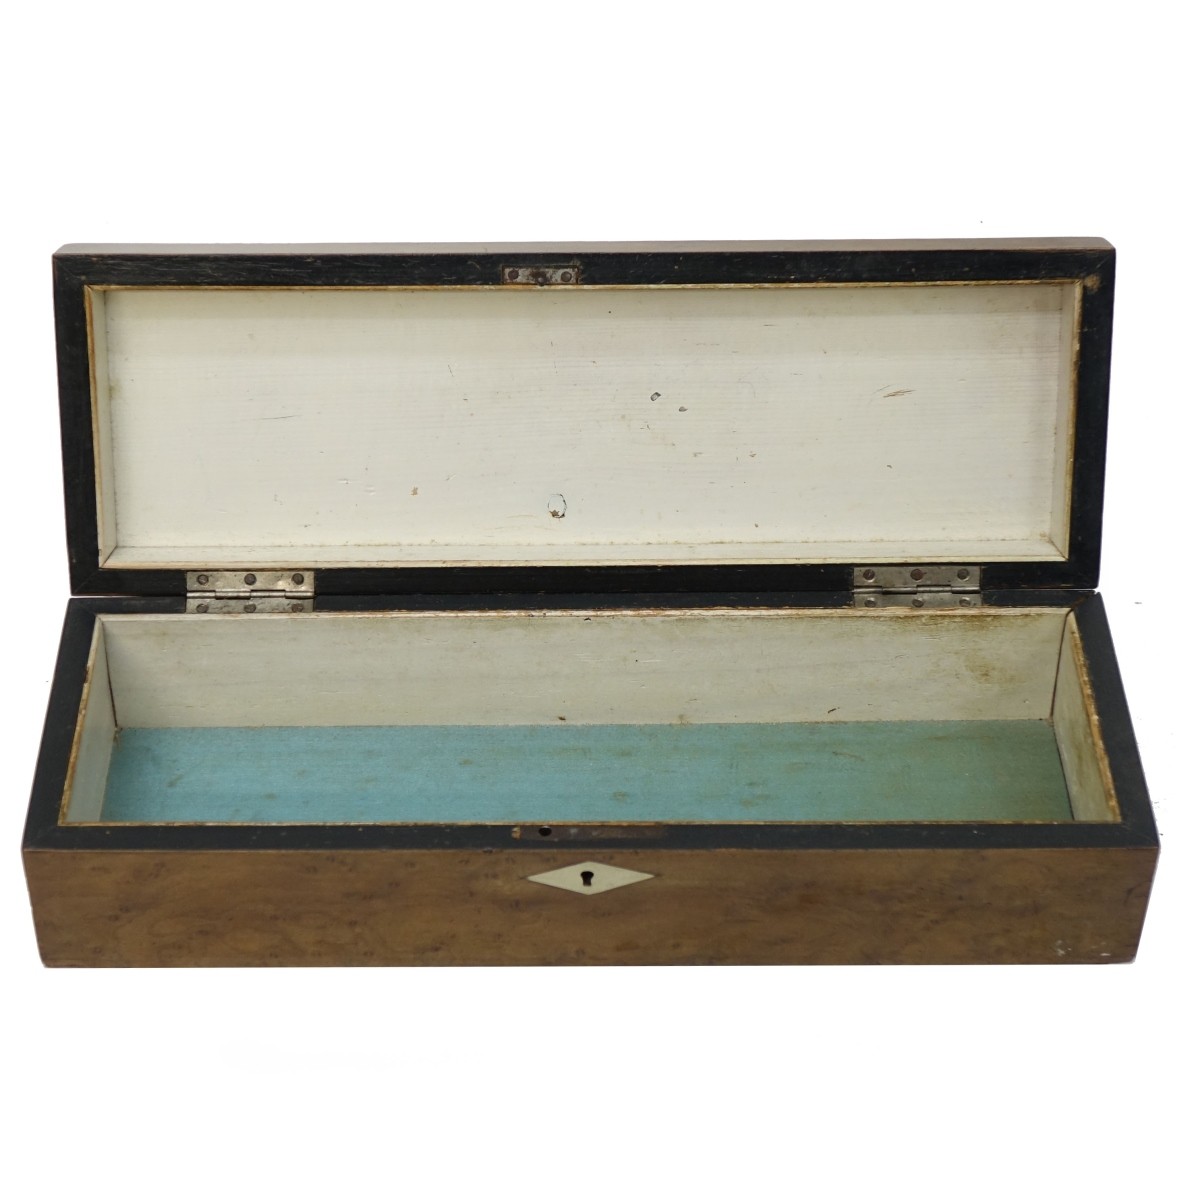 Antique Napoleon III Glove Box